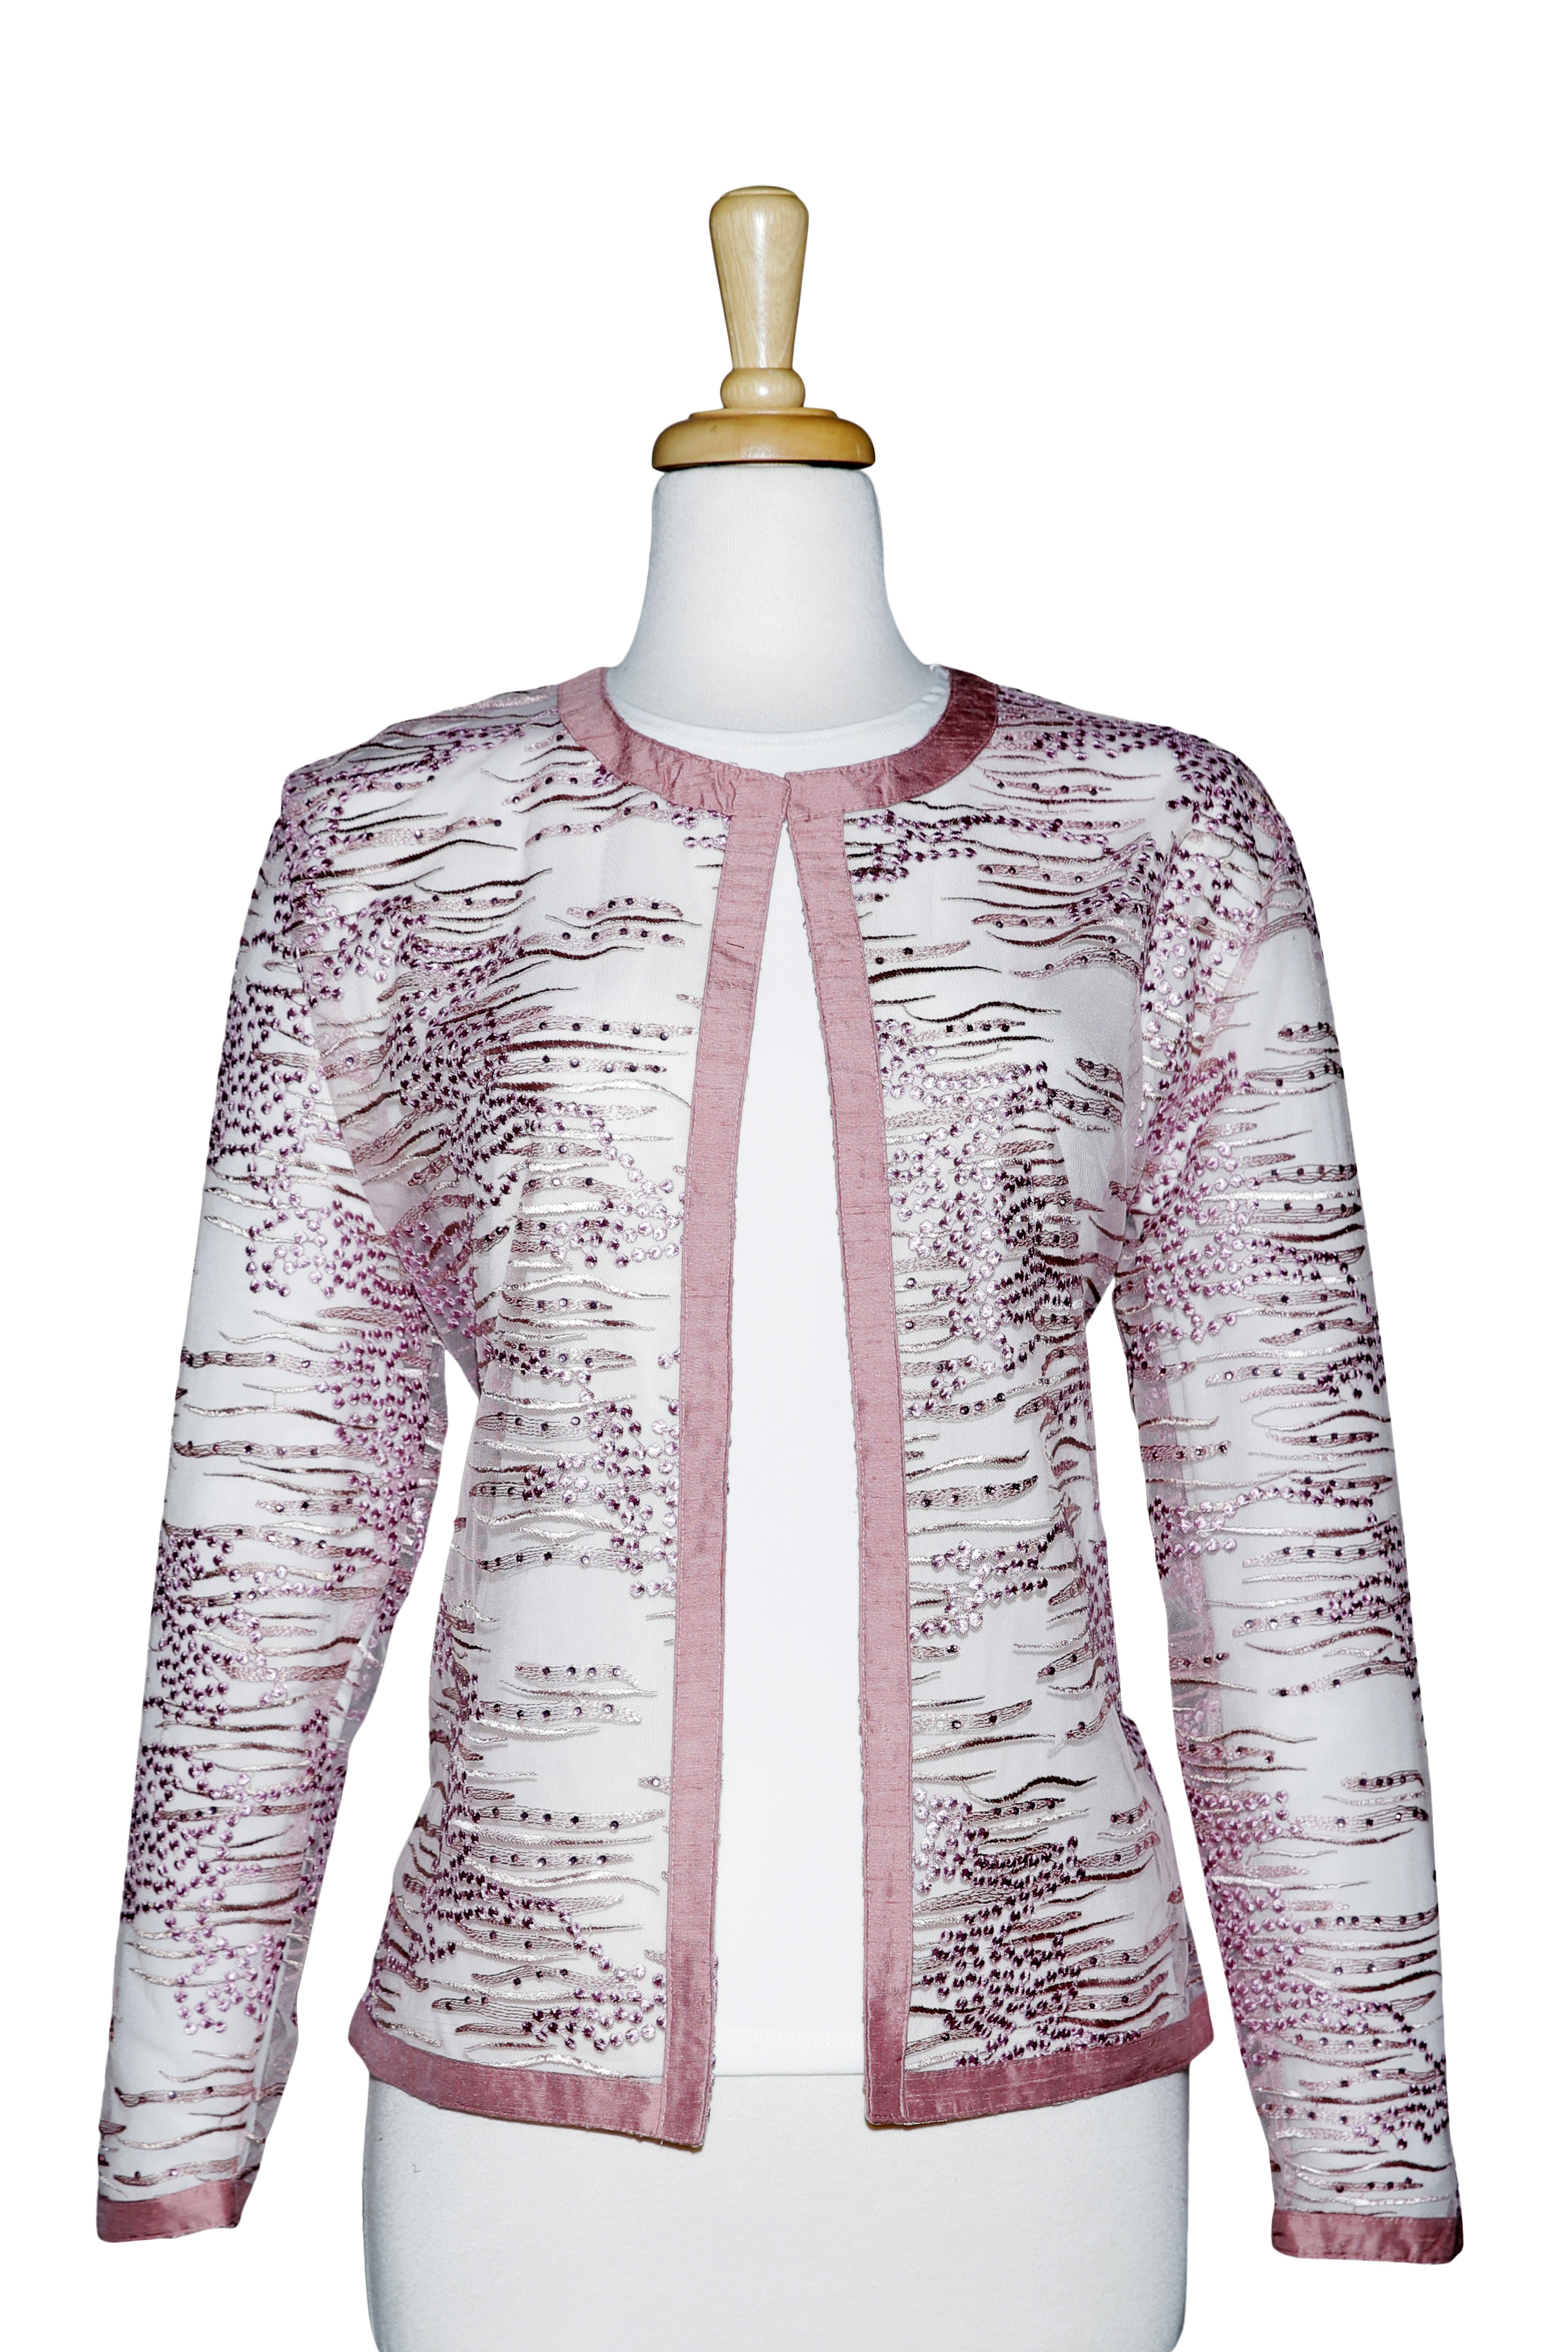 Plus Size Mauve Rhinestone Embroidered Lace Jacket 